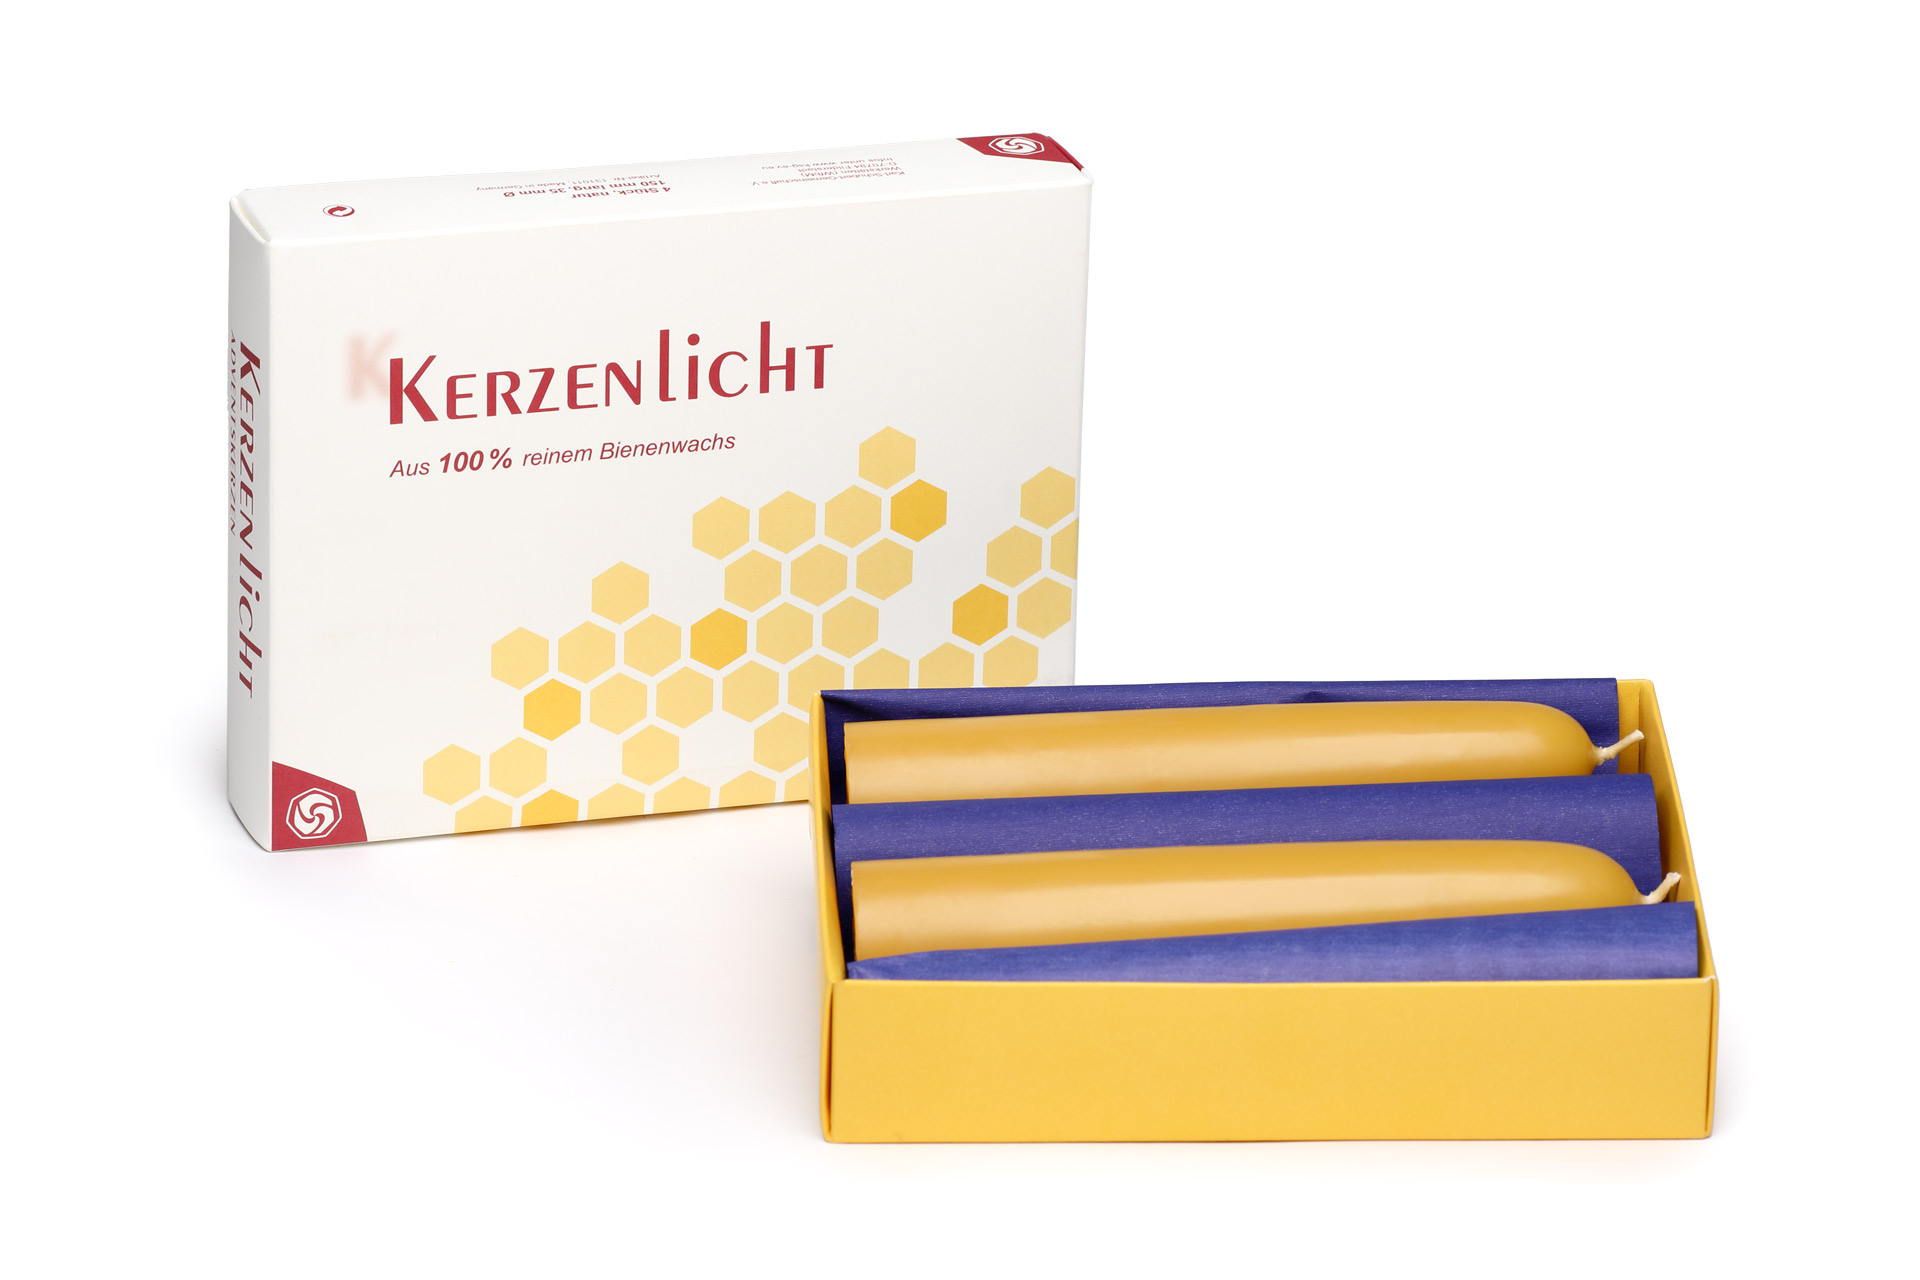 Bienenwachskerzen-150mm-lang-Adventskerzen-natur-in-Schachtel-4-Stueck-ksg